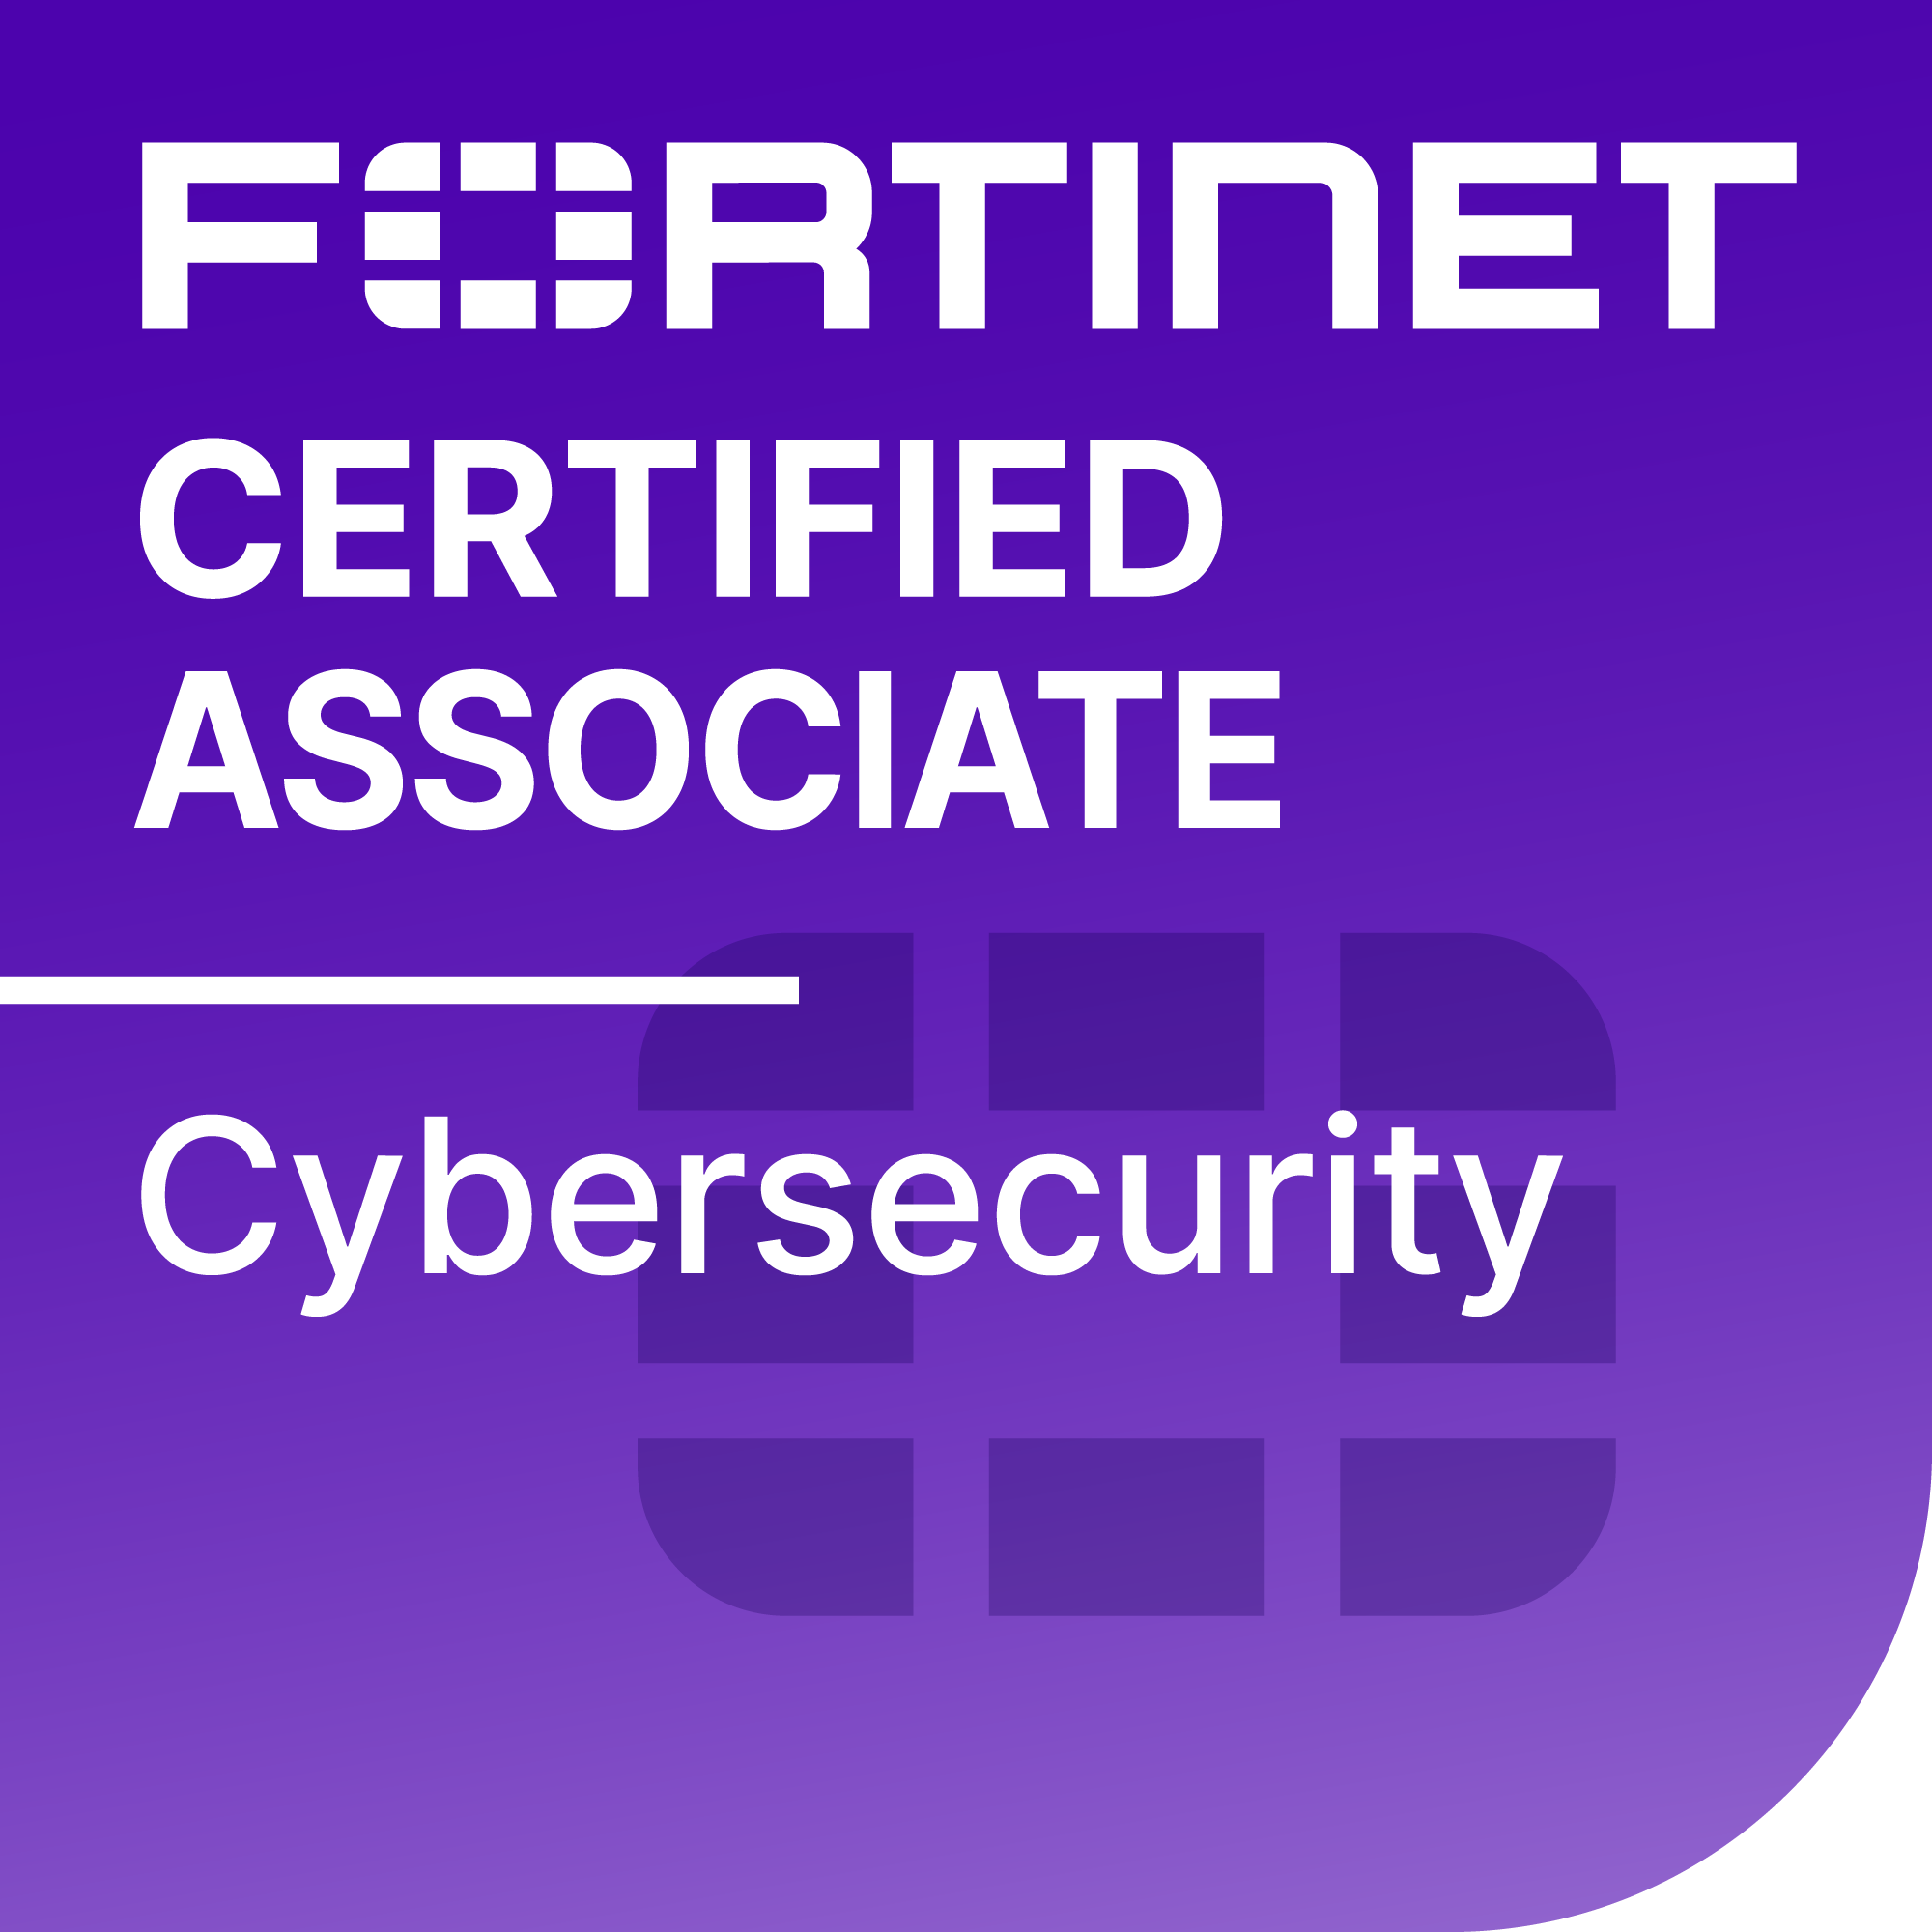 Asociado certificado de Fortinet, Ciberseguridad